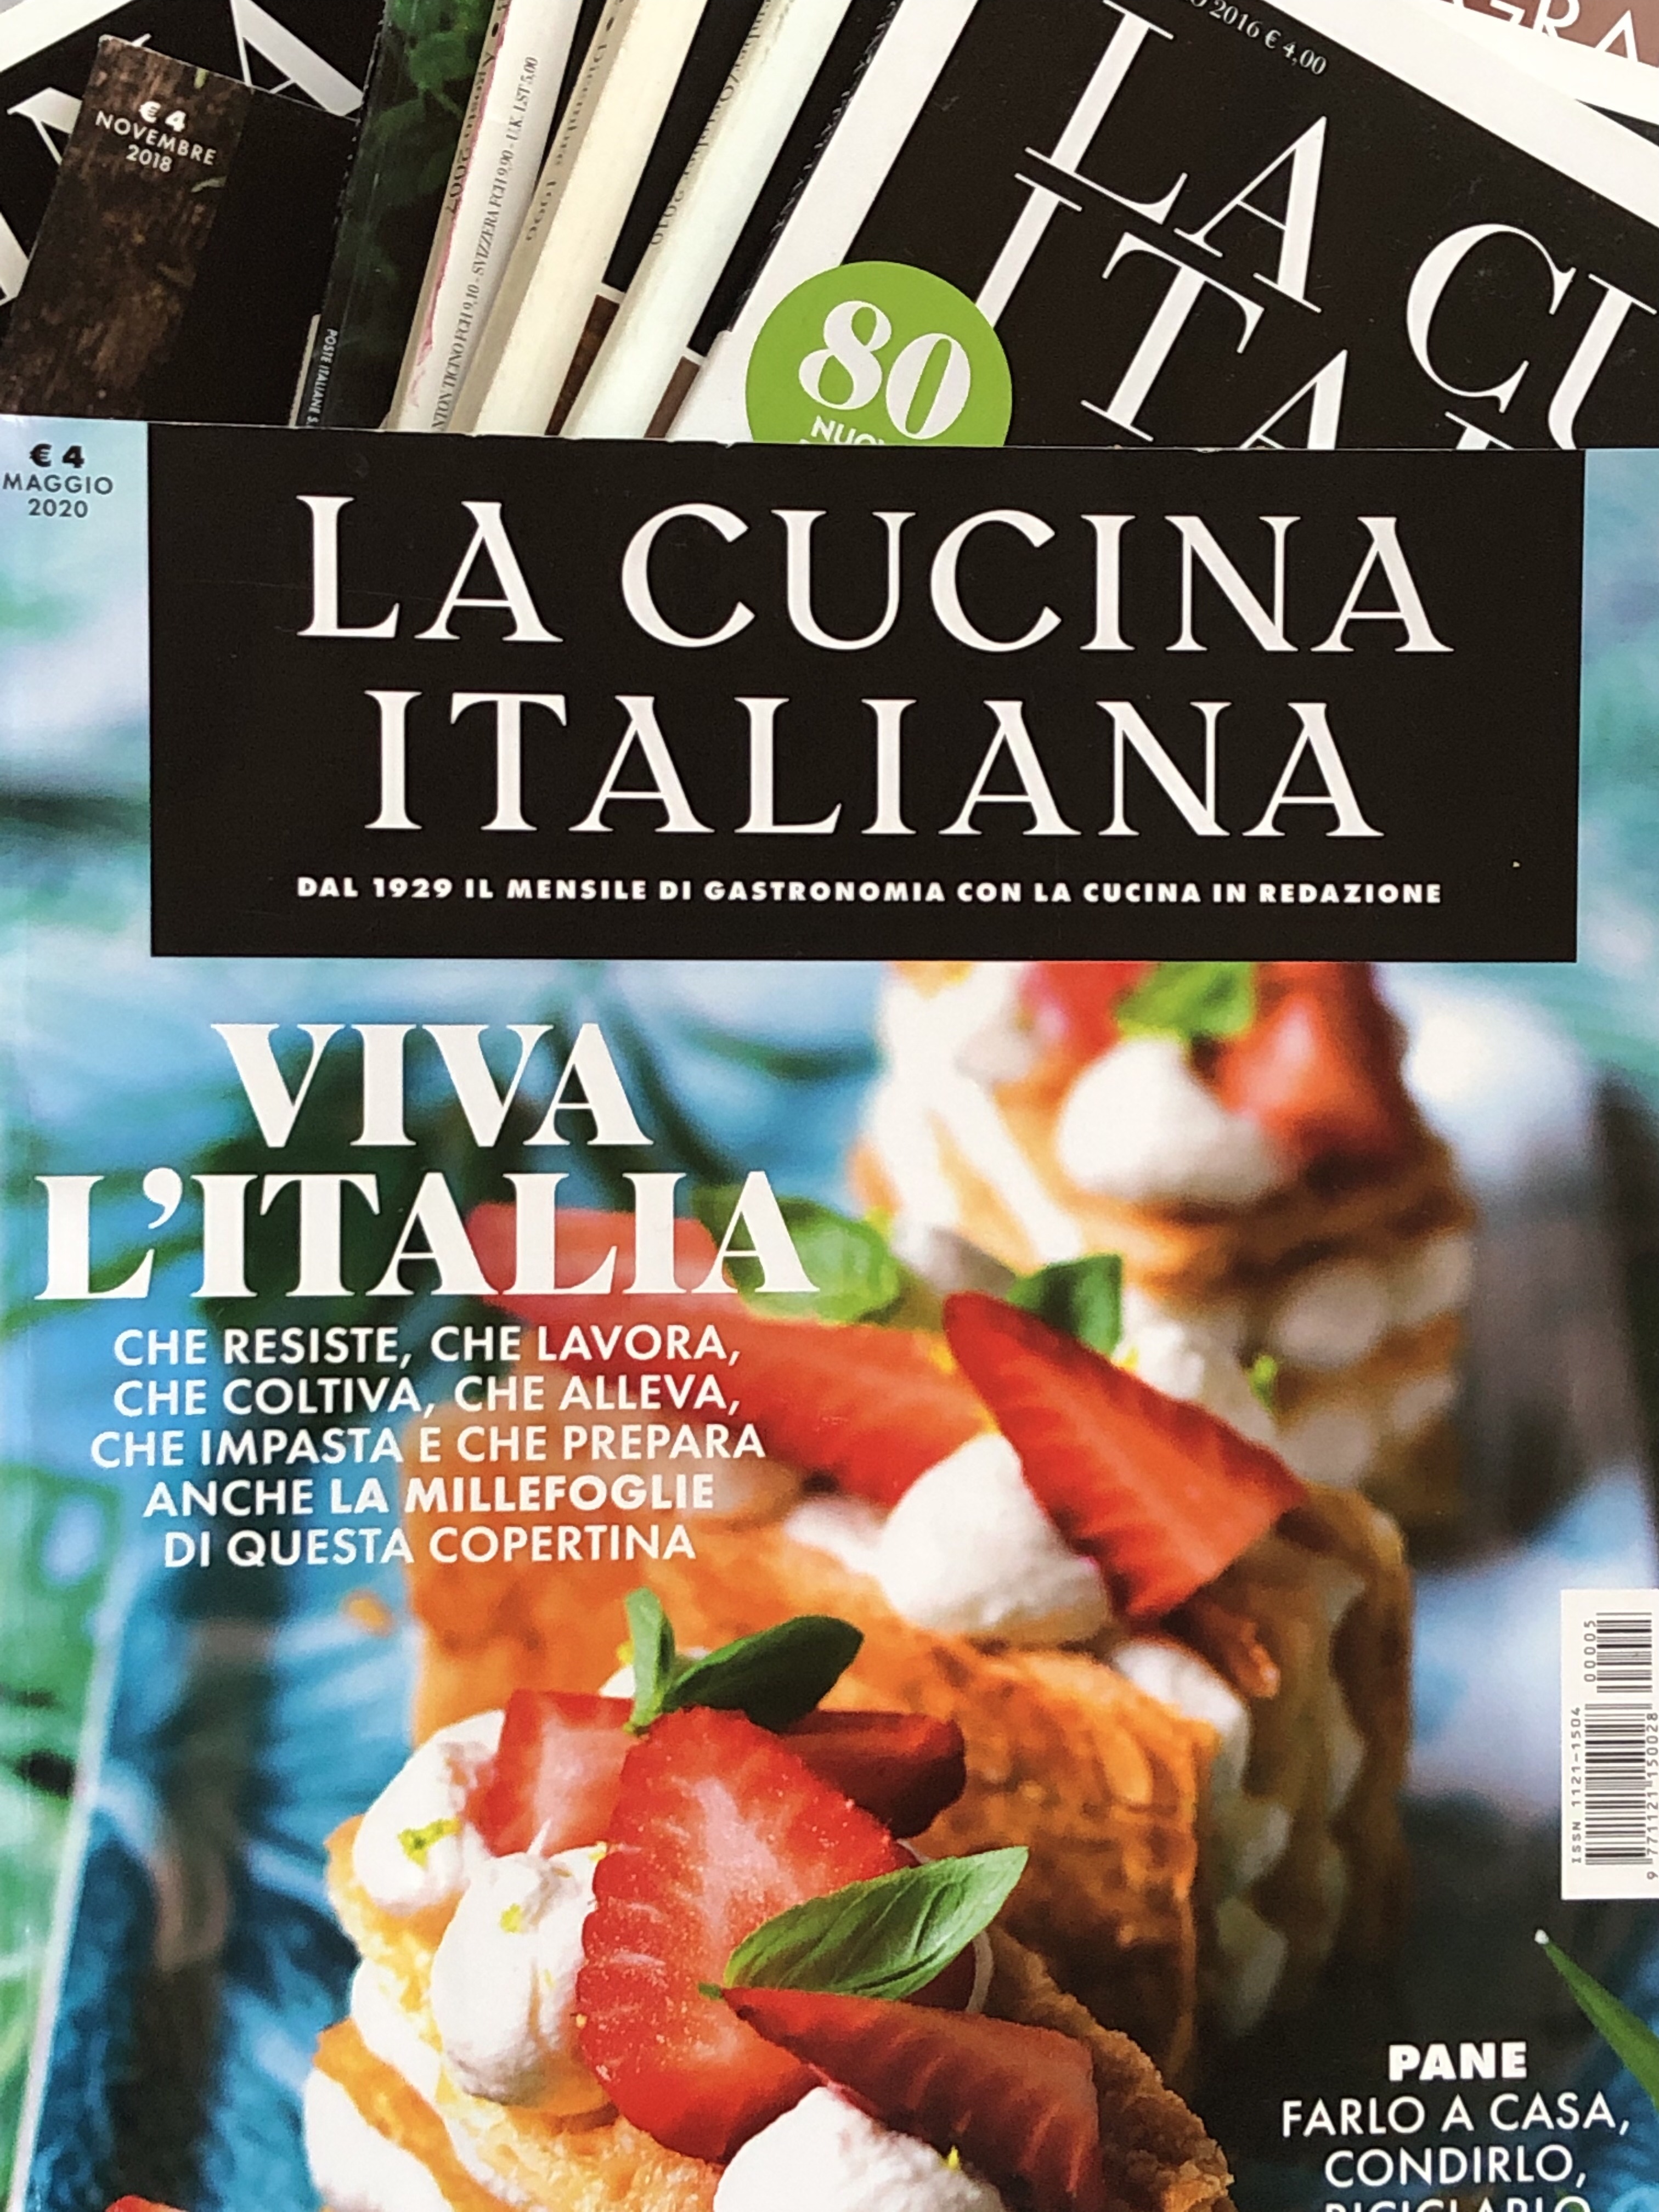 La Cucina Italiana – Life in Italy